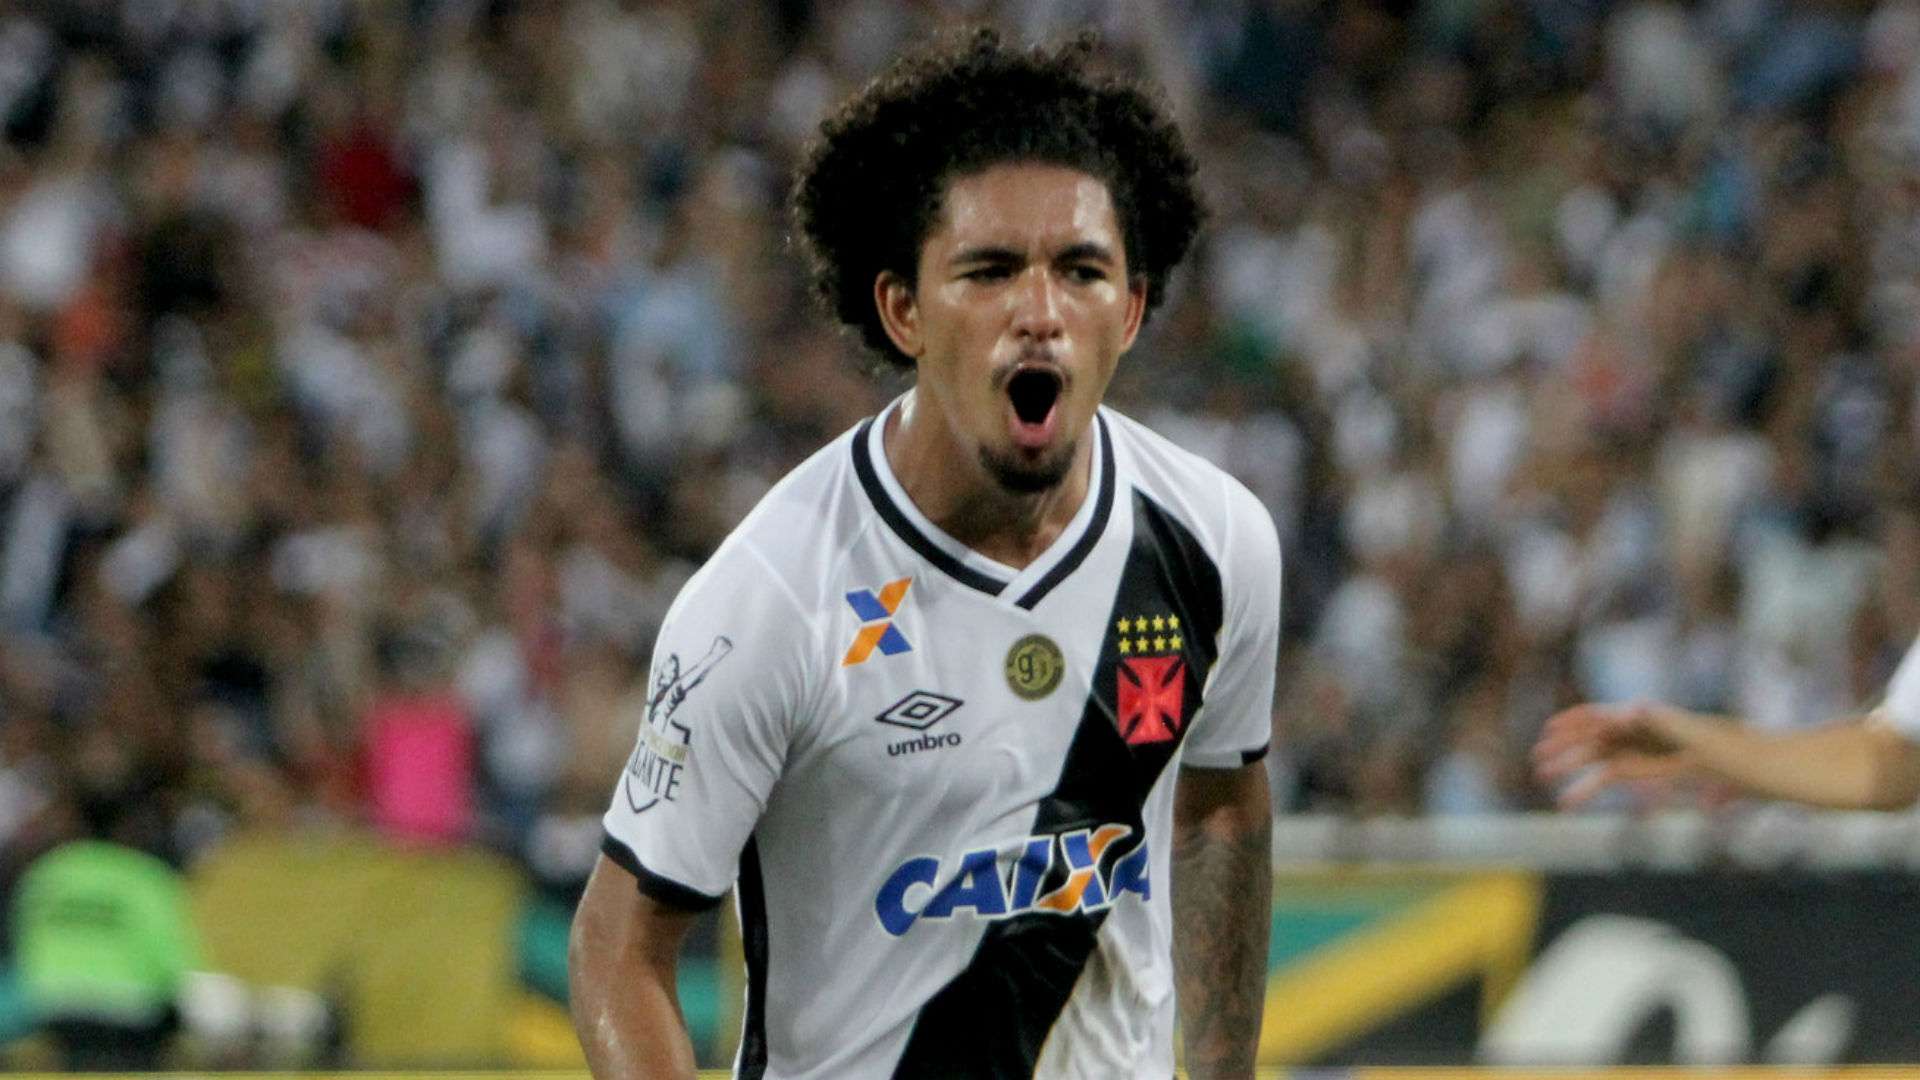 Douglas Vasco Botafogo Taça Rio Carioca 16 04 2017